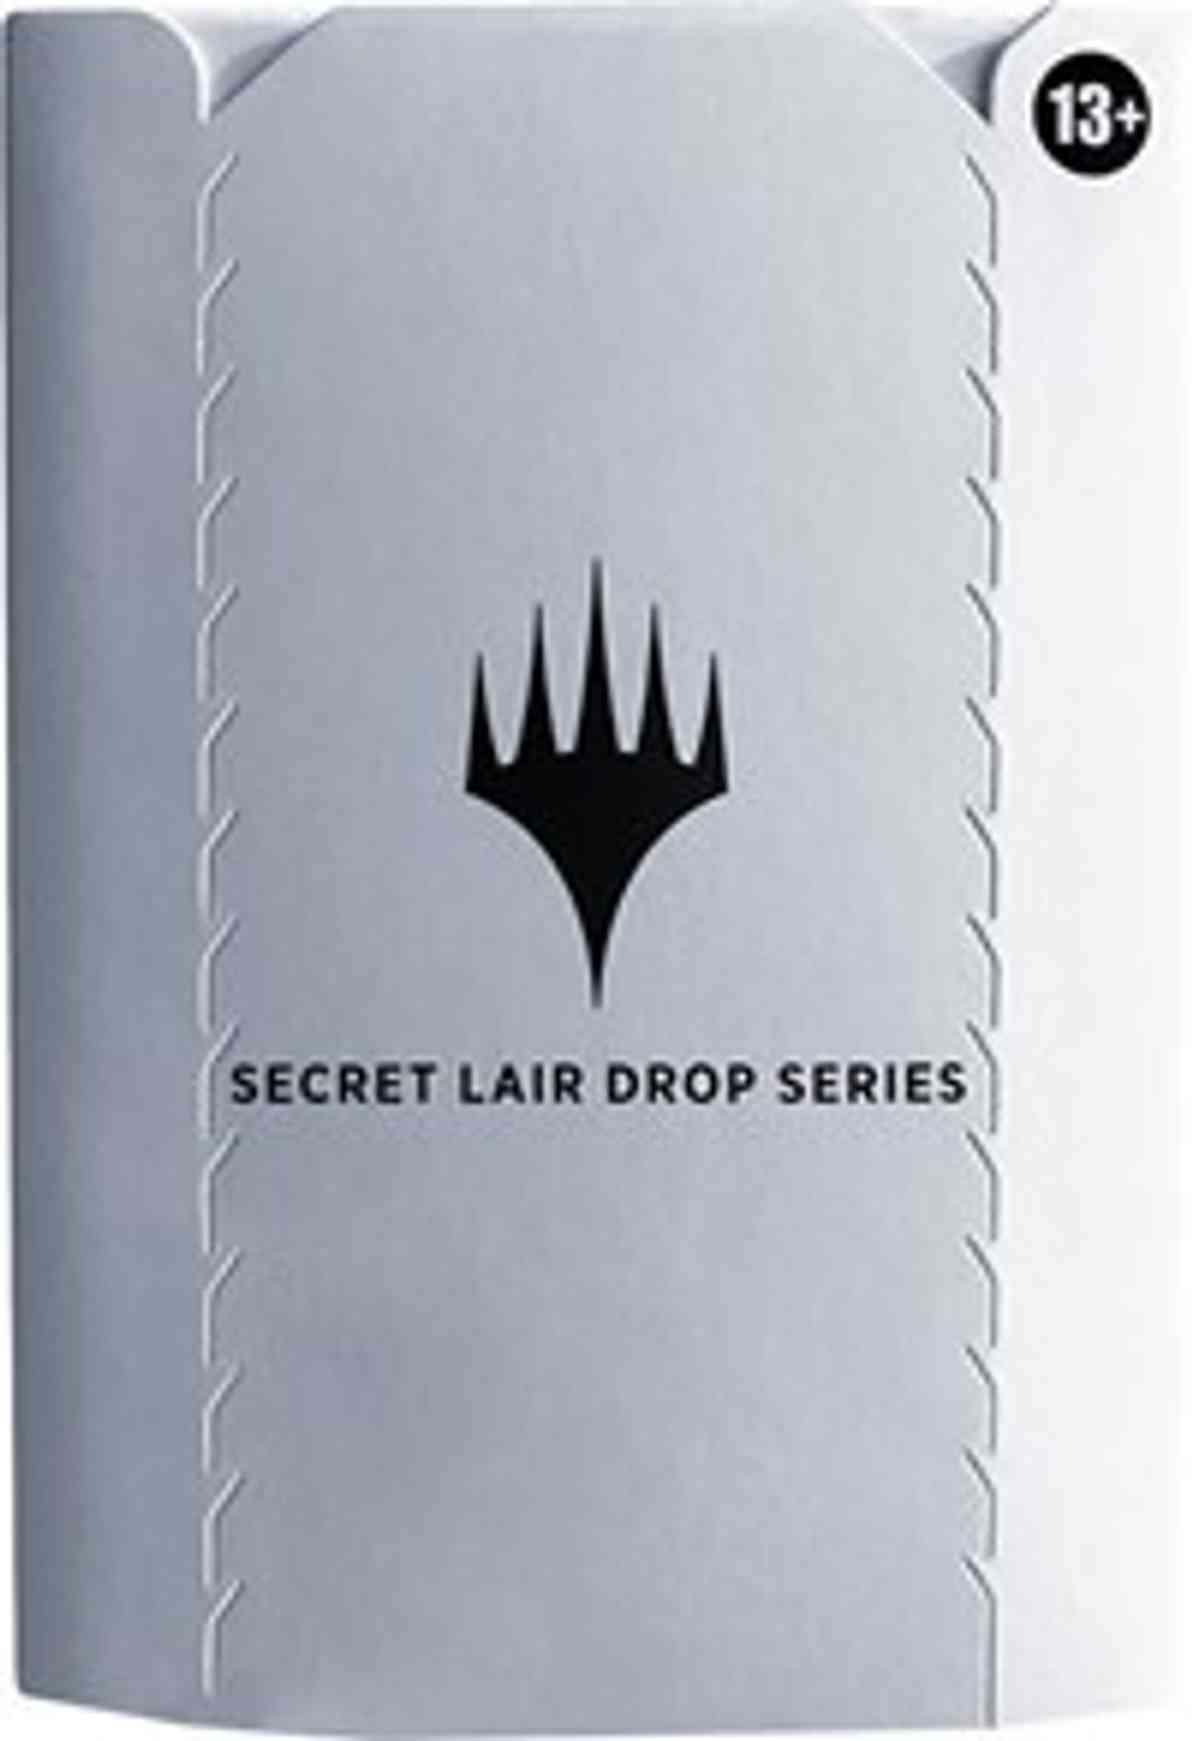 Secret Lair Drop: Purrfection - Foil magic card front